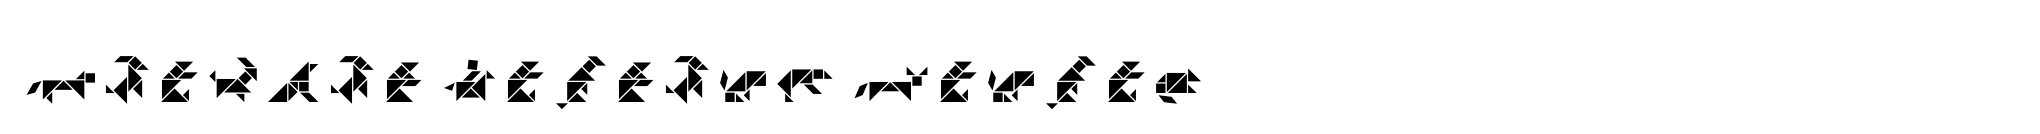 Tangram Animals Inline image